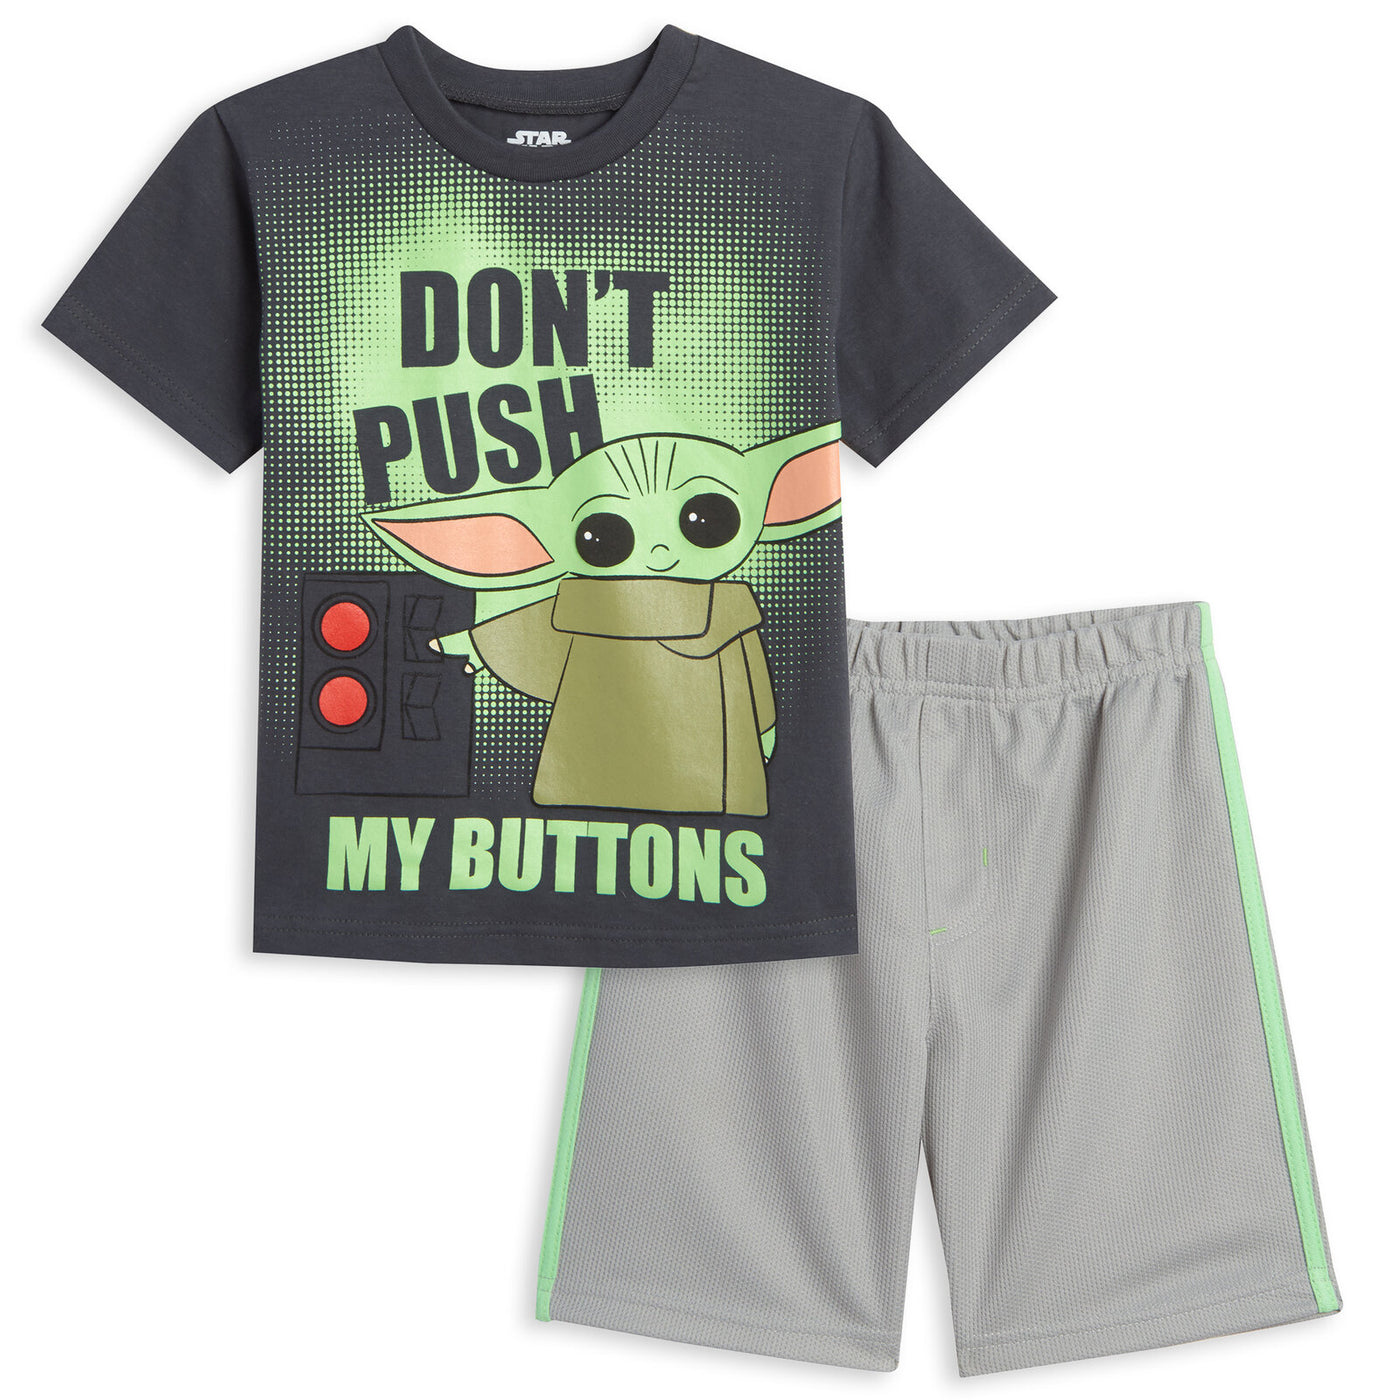 Star Wars Baby Yoda T-Shirt and Mesh Shorts Outfit Set